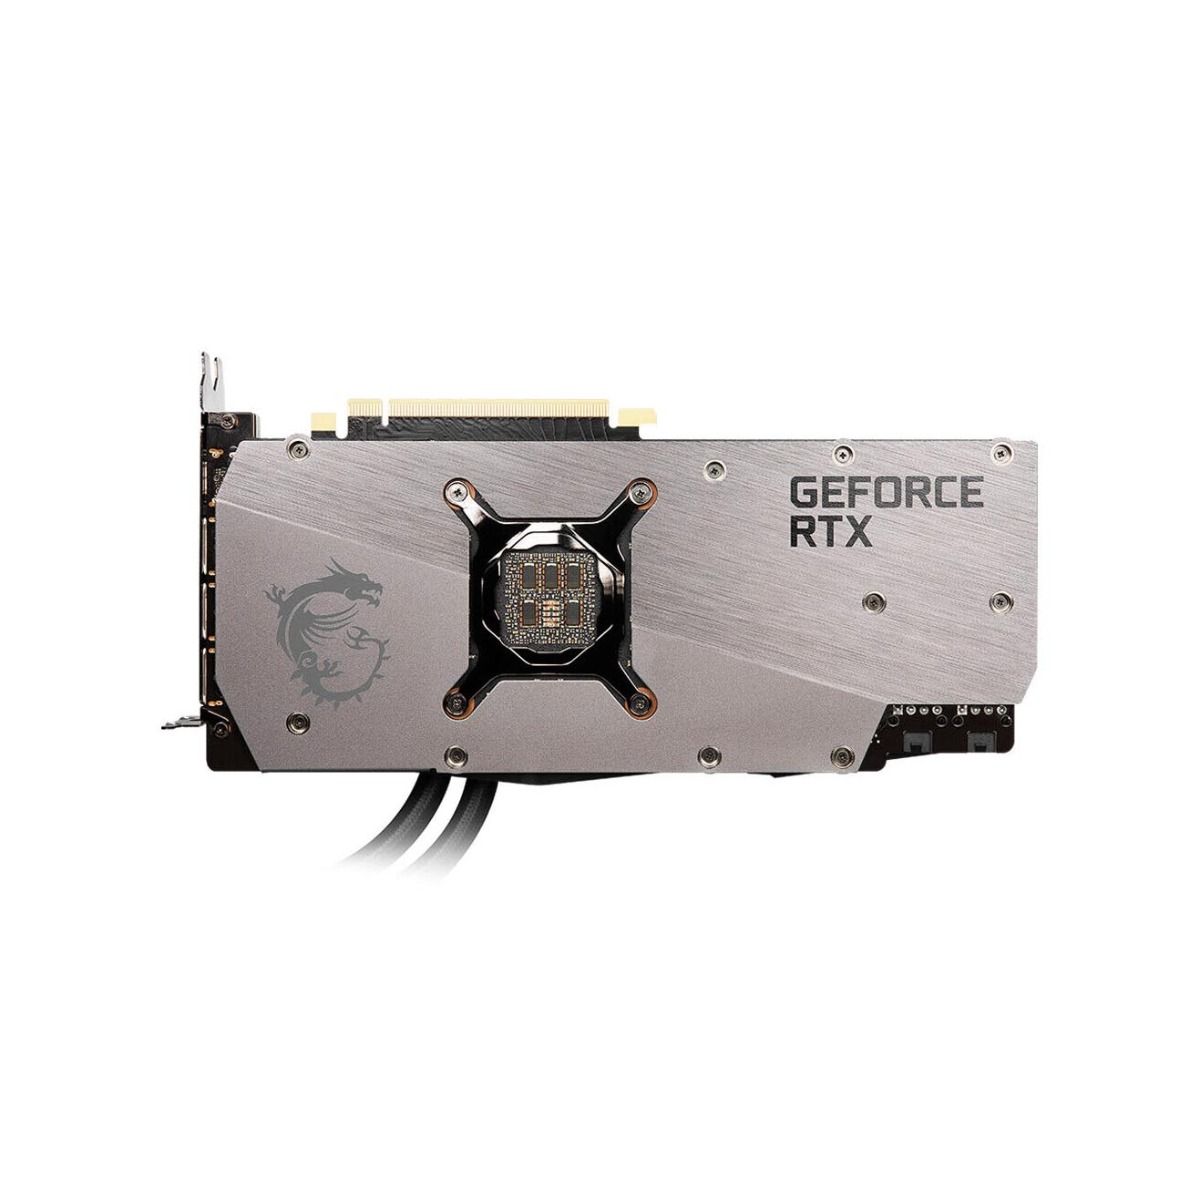 MSI GeForce RTX 3080 SEA HAWK X 10GB GDDR6X LHR Water Cooled Graphics Card